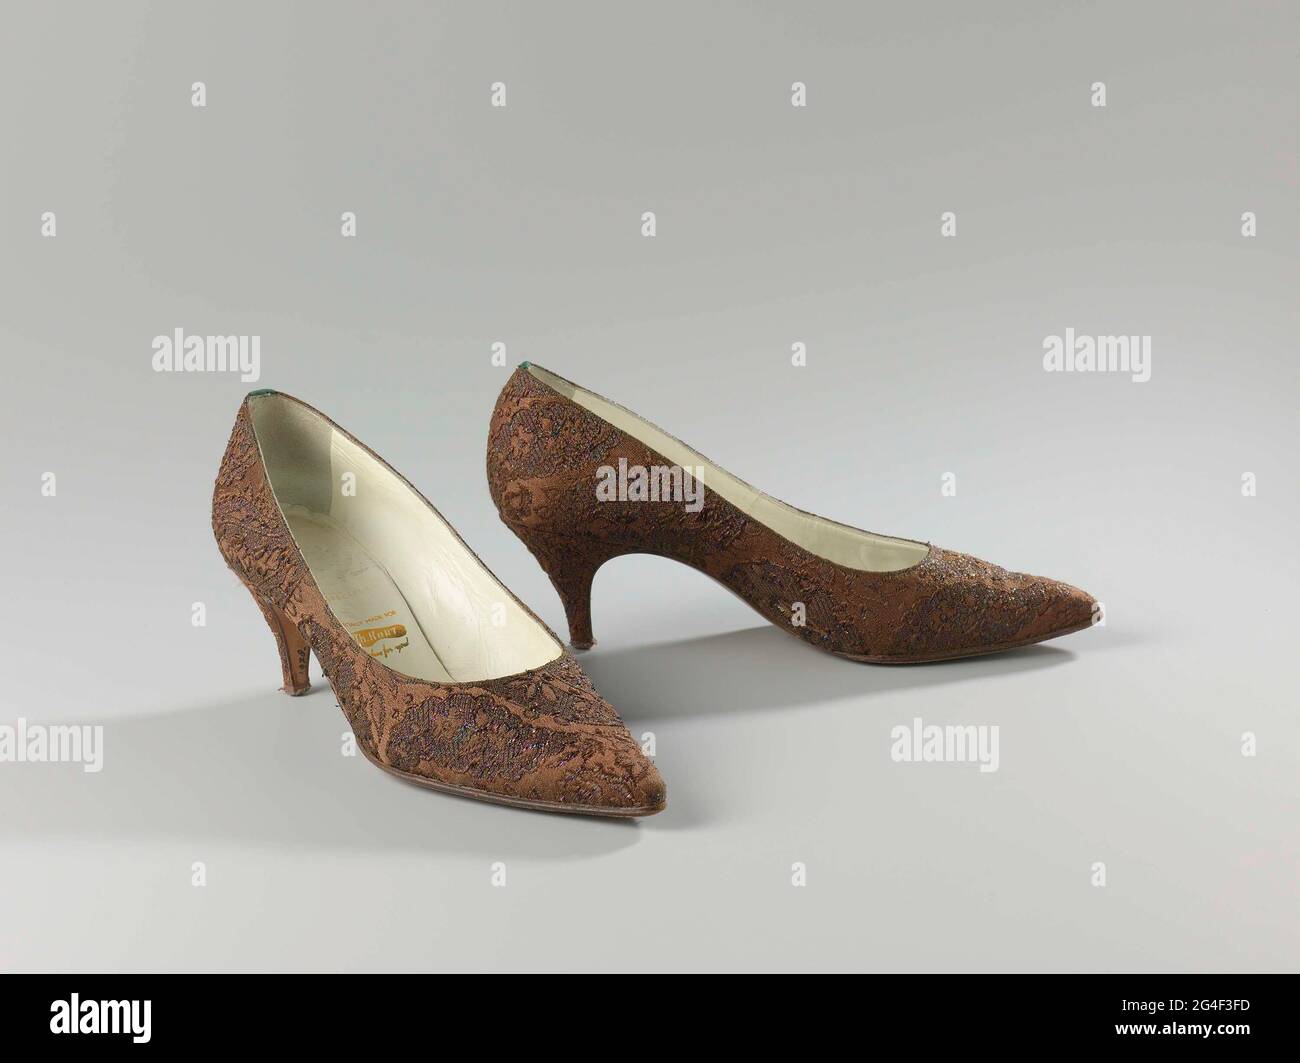 Zapatos para mujer de brocado de seda marrón con hilos iridiscentes.  Modelo: Nariz puntiaguda, una hoja de una pieza. La parte delantera del  talón se desplaza hacia abajo en una esquina